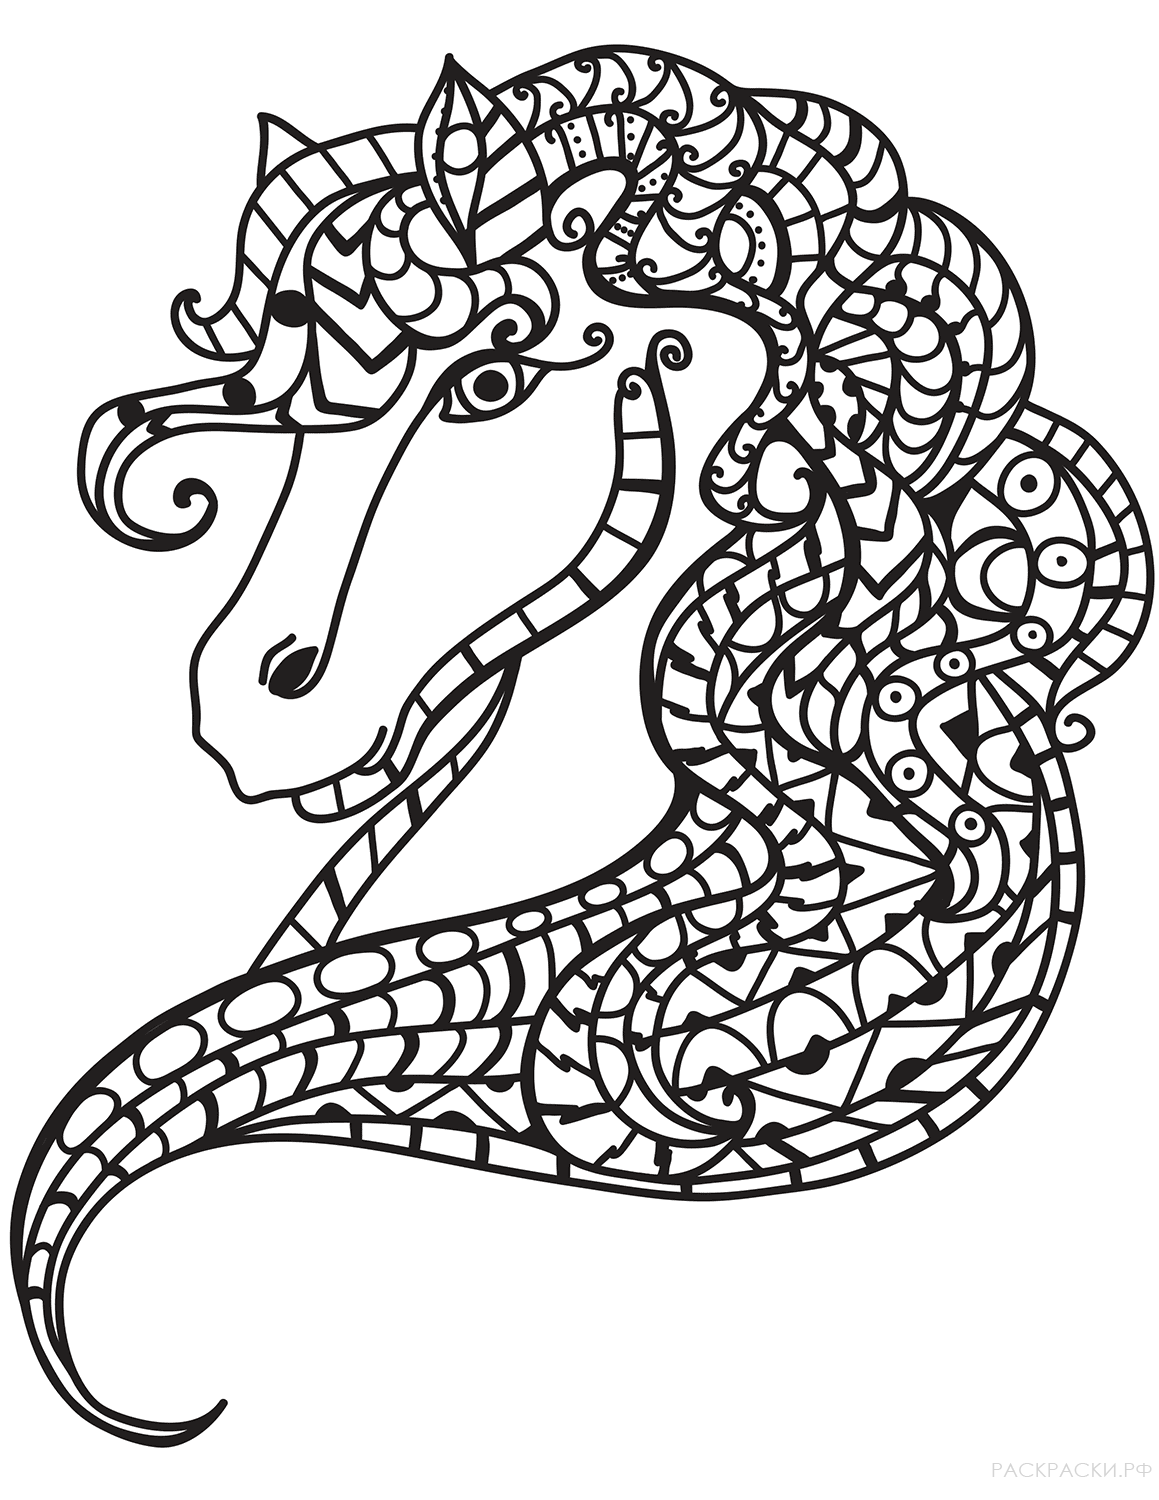 Раскраска Голова лошади в технике дзентангл